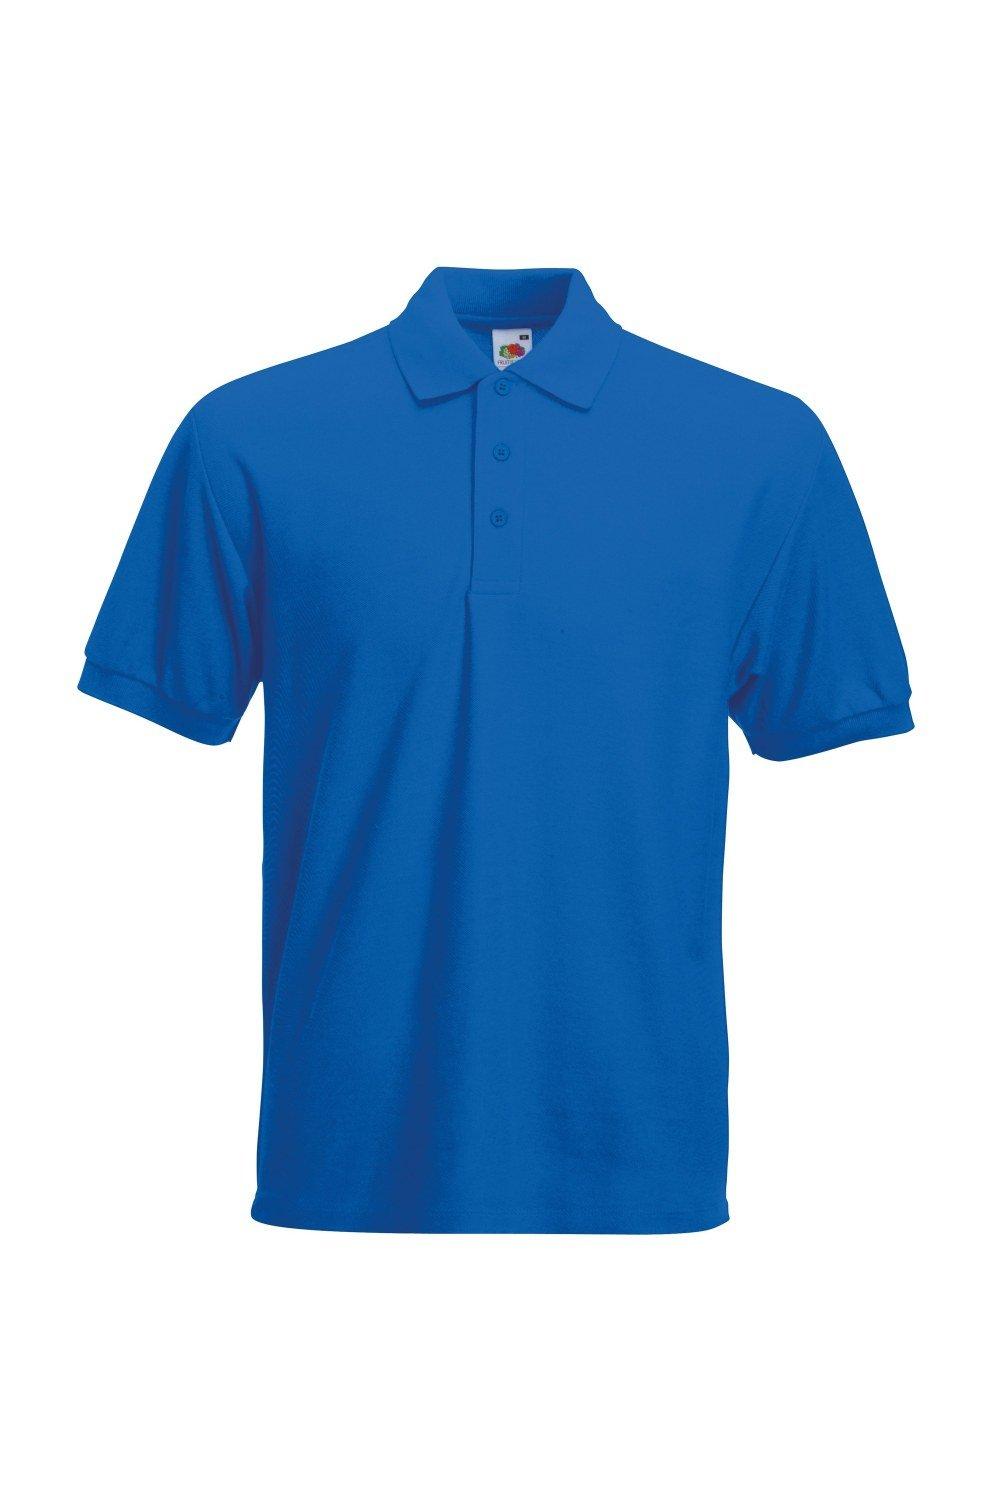 однотонная рубашка поло из тяжелого пике с заклепками premier синий Рубашка поло с короткими рукавами из тяжелого пике 65/35 Fruit of the Loom, синий